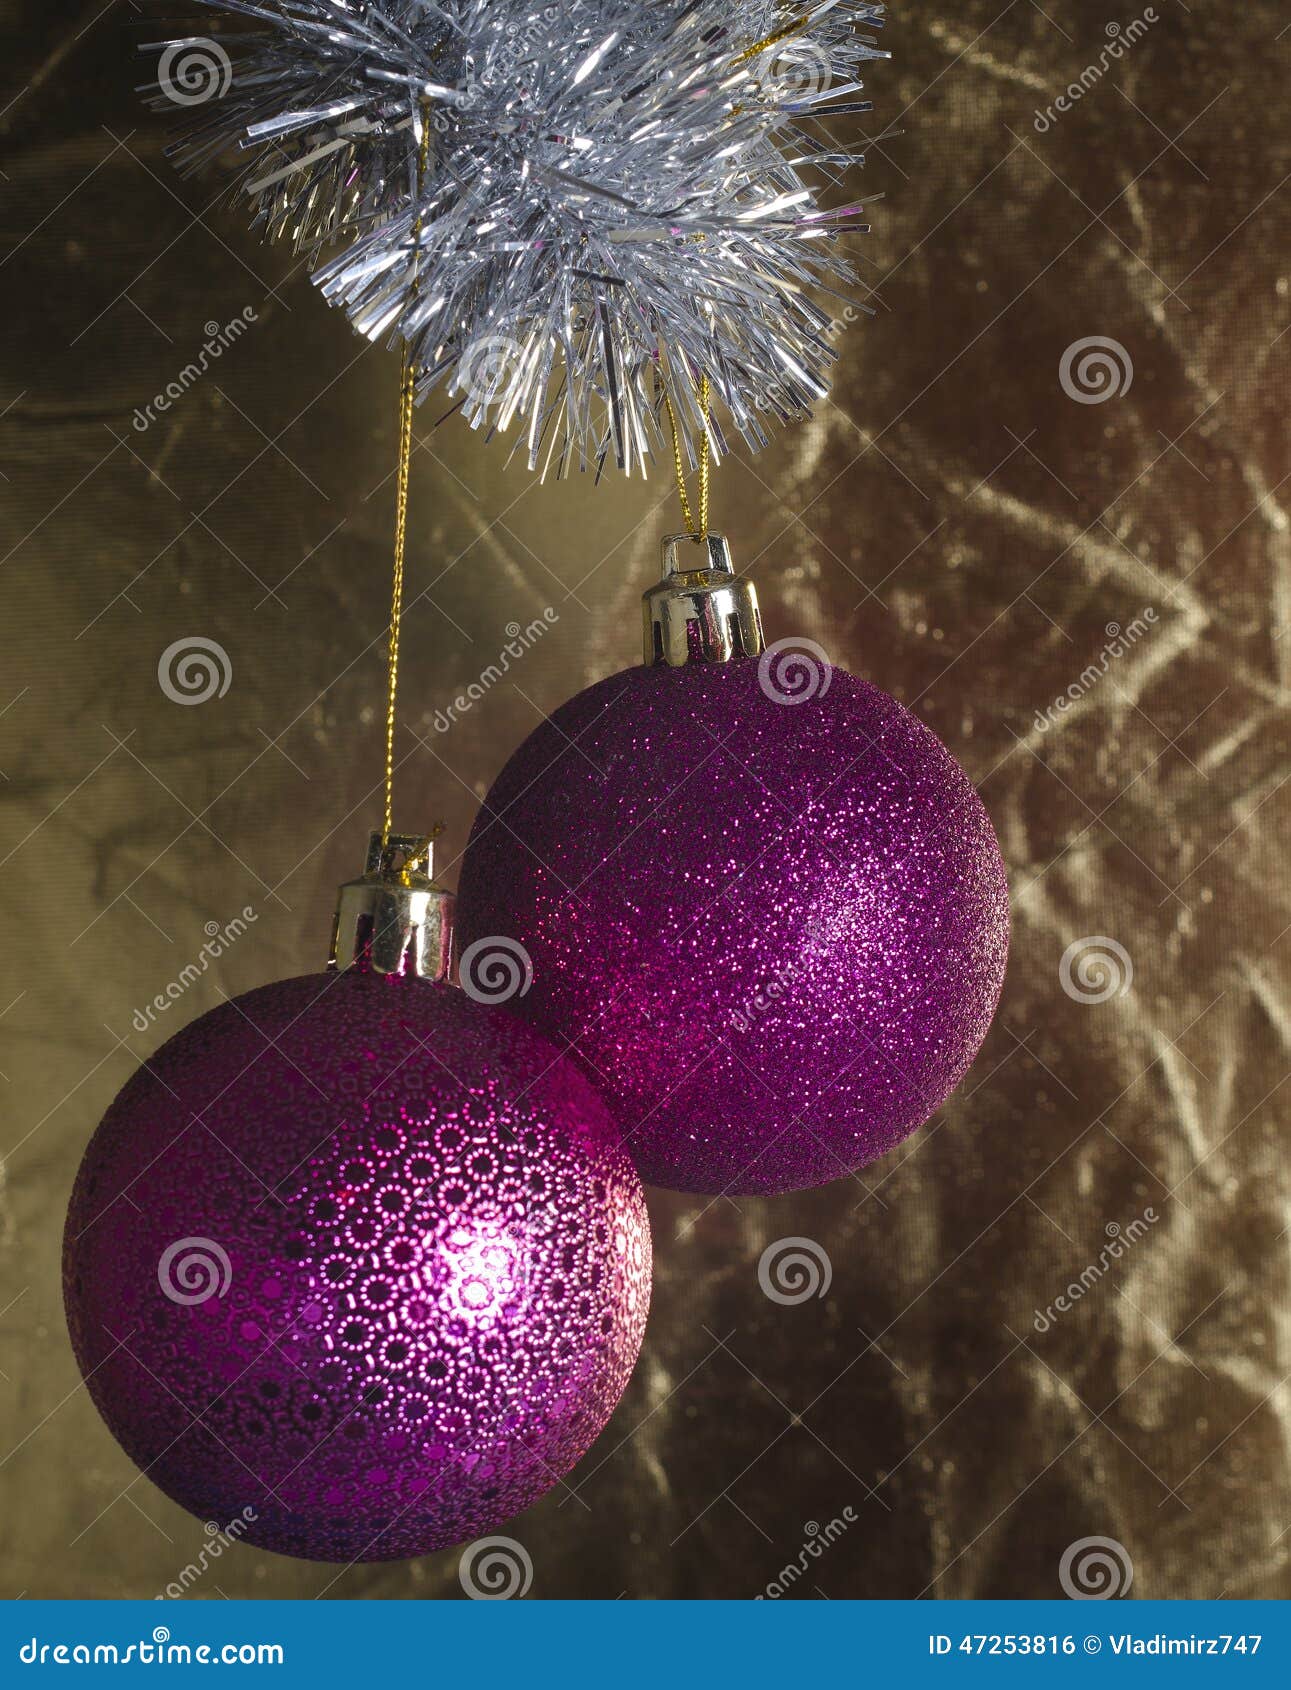 欢乐圣诞节树装饰. 在金黄不均匀的背景的两个桃红色圣诞节球